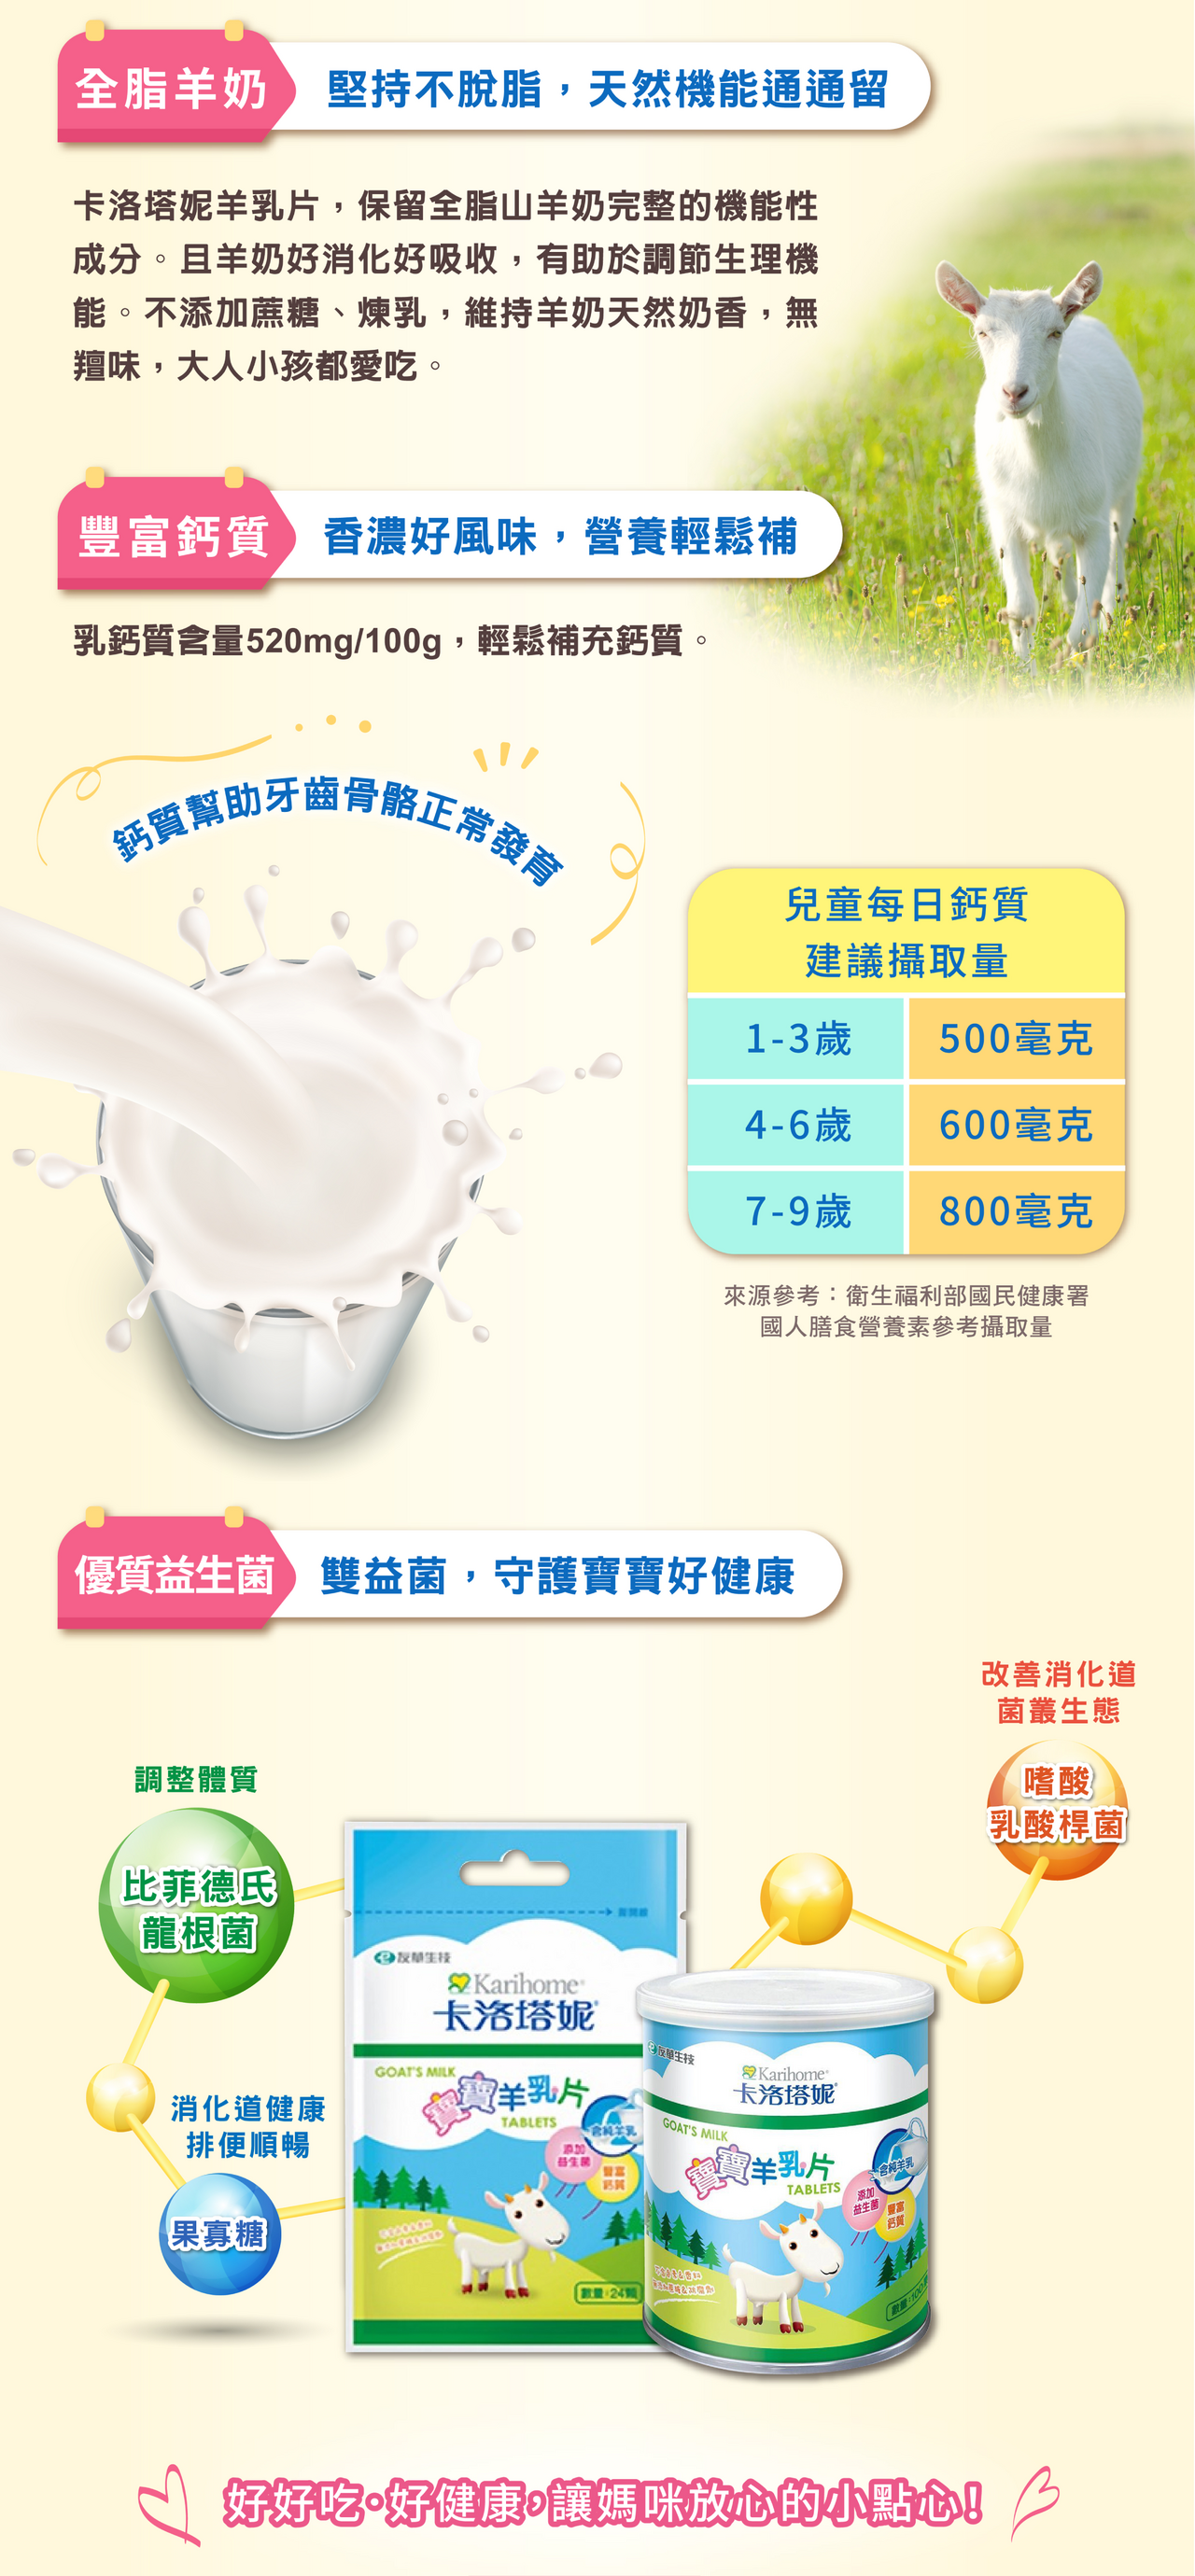 卡洛塔妮寶寶羊乳片,全脂羊奶製成,豐富鈣質及優質益生菌